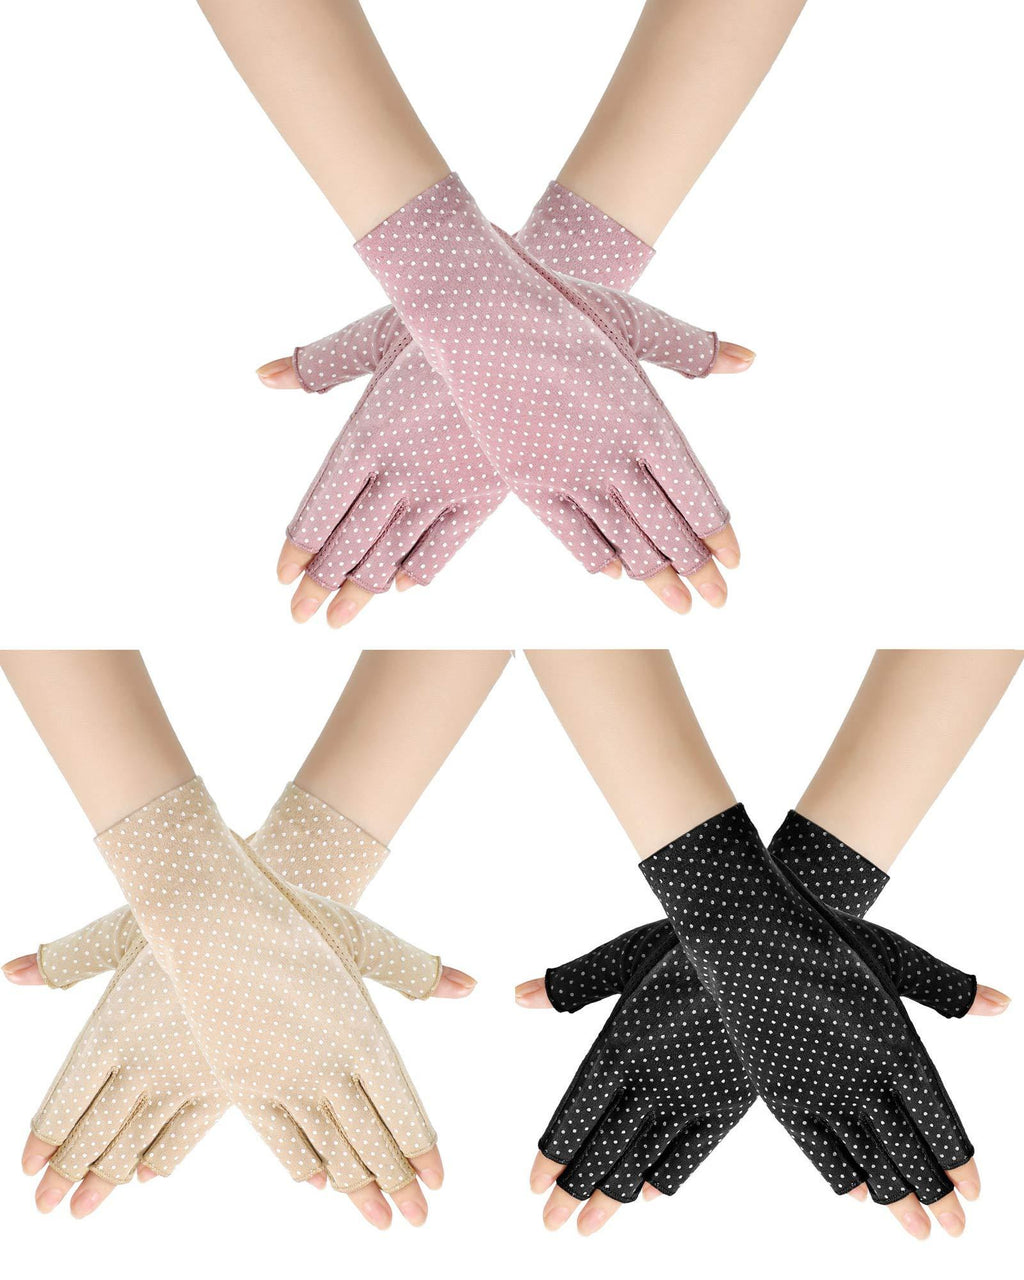 [Australia] - Sunblock Fingerless Gloves Non-slip UV Protection Driving Gloves Summer Outdoor Gloves for Women Girls Apricot, Pink, Black 3 